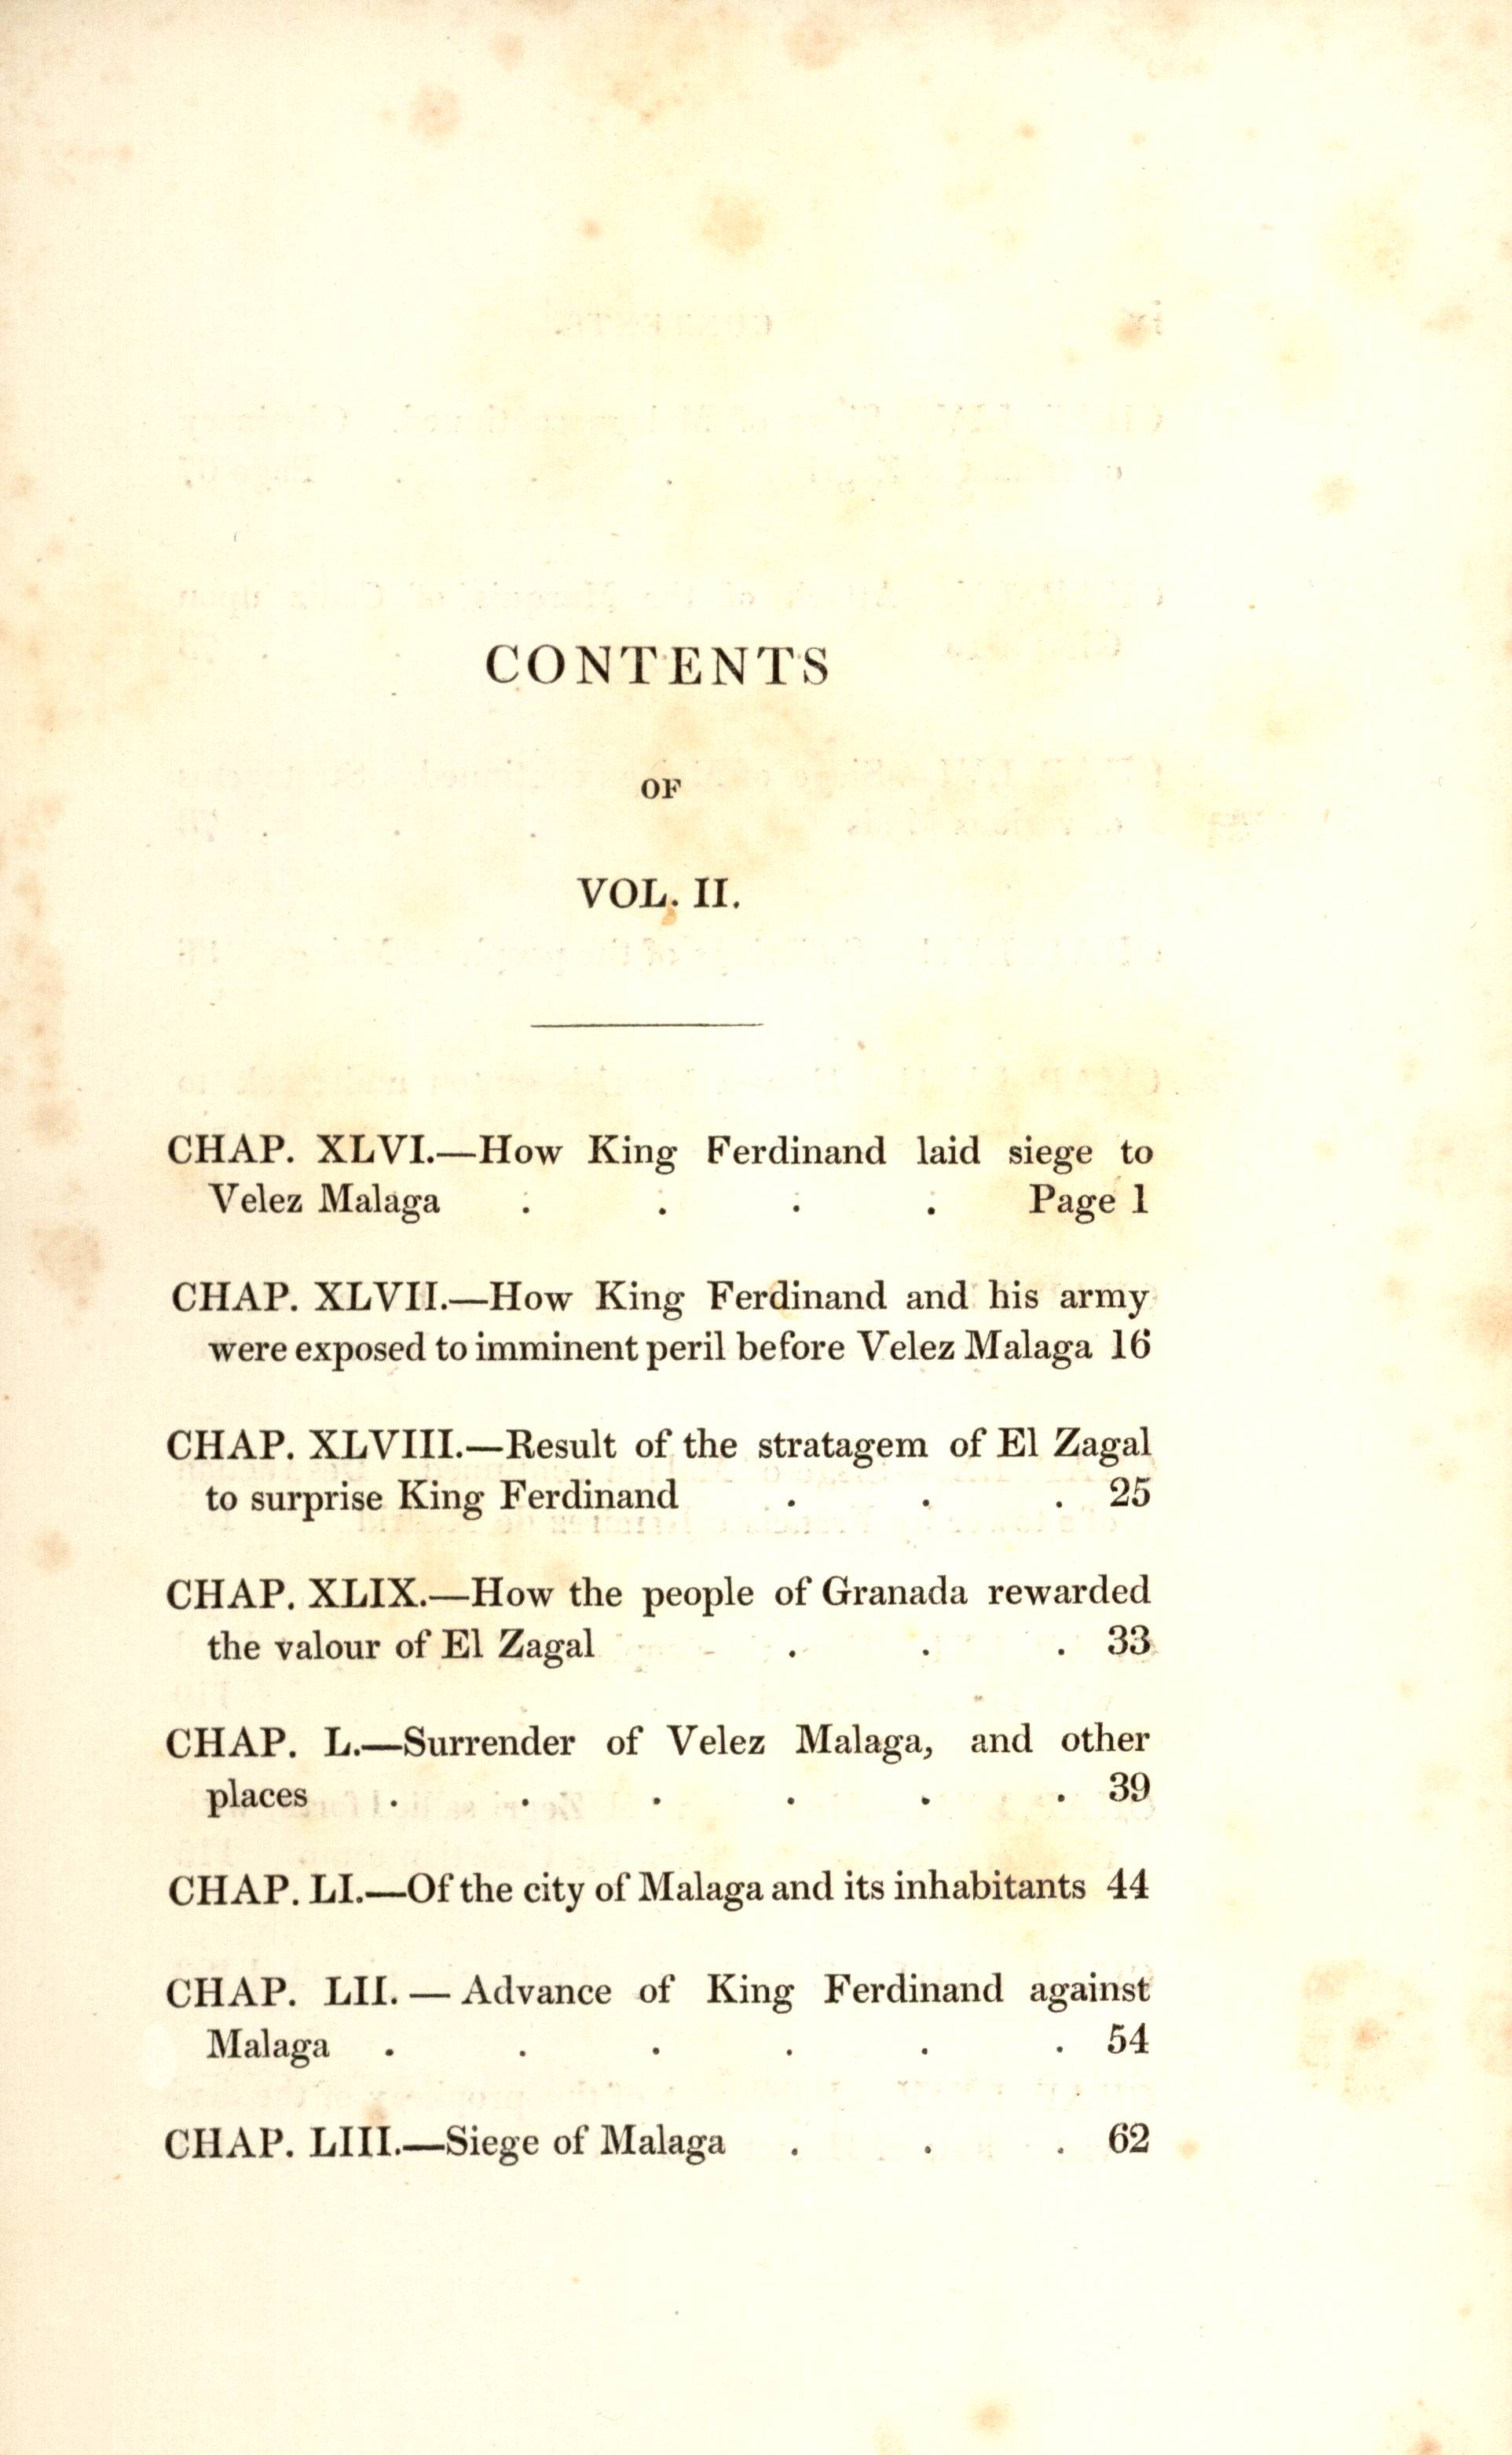 Contents of vol. II